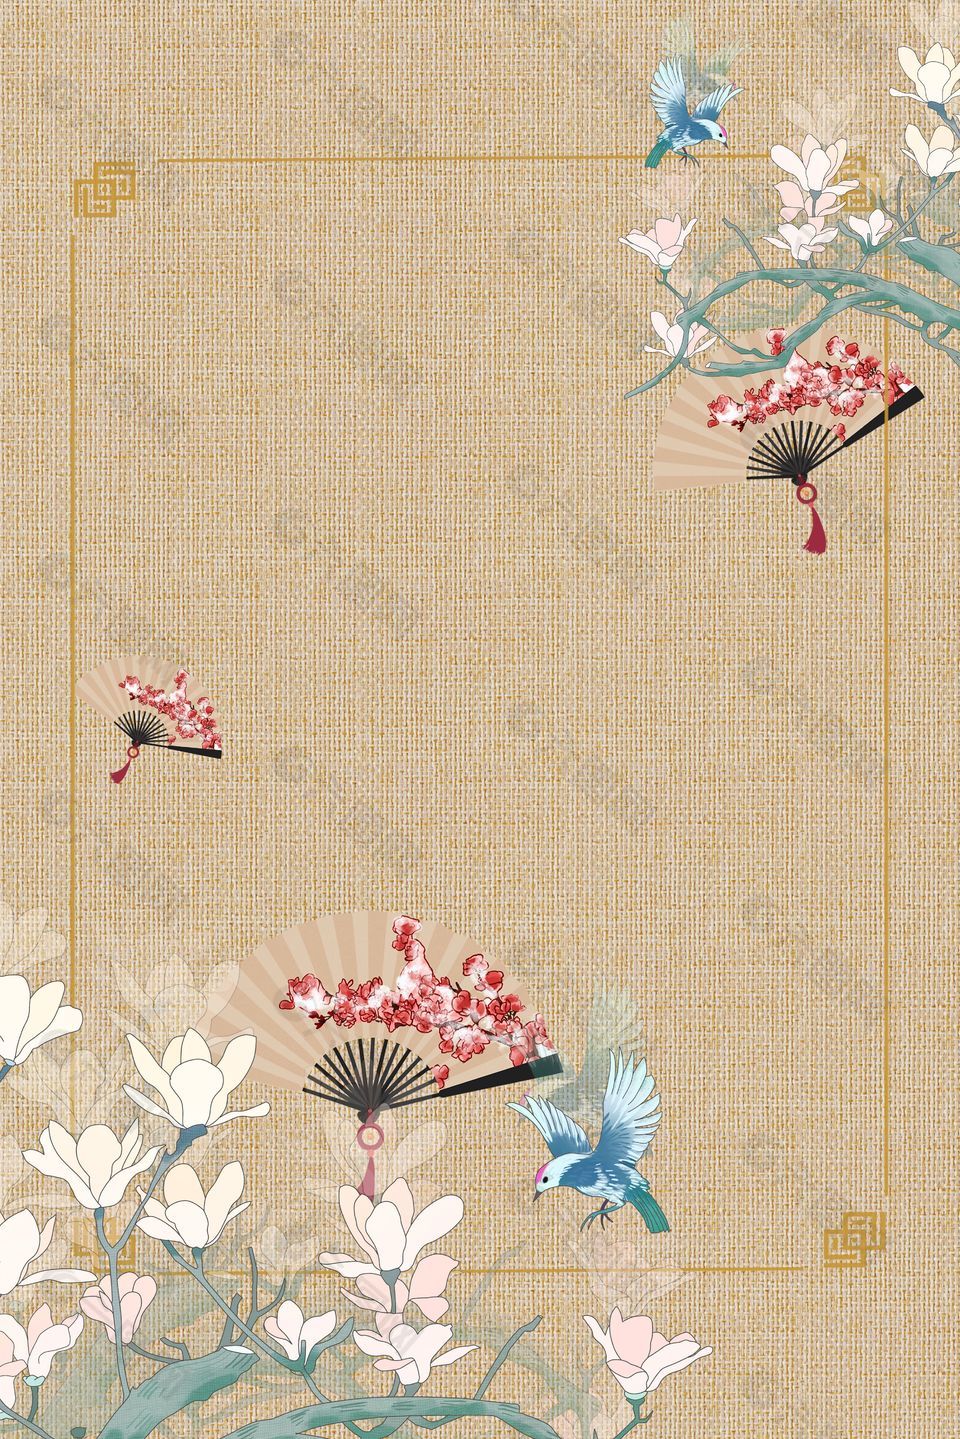 中国传统花鸟工笔画中式海报背景